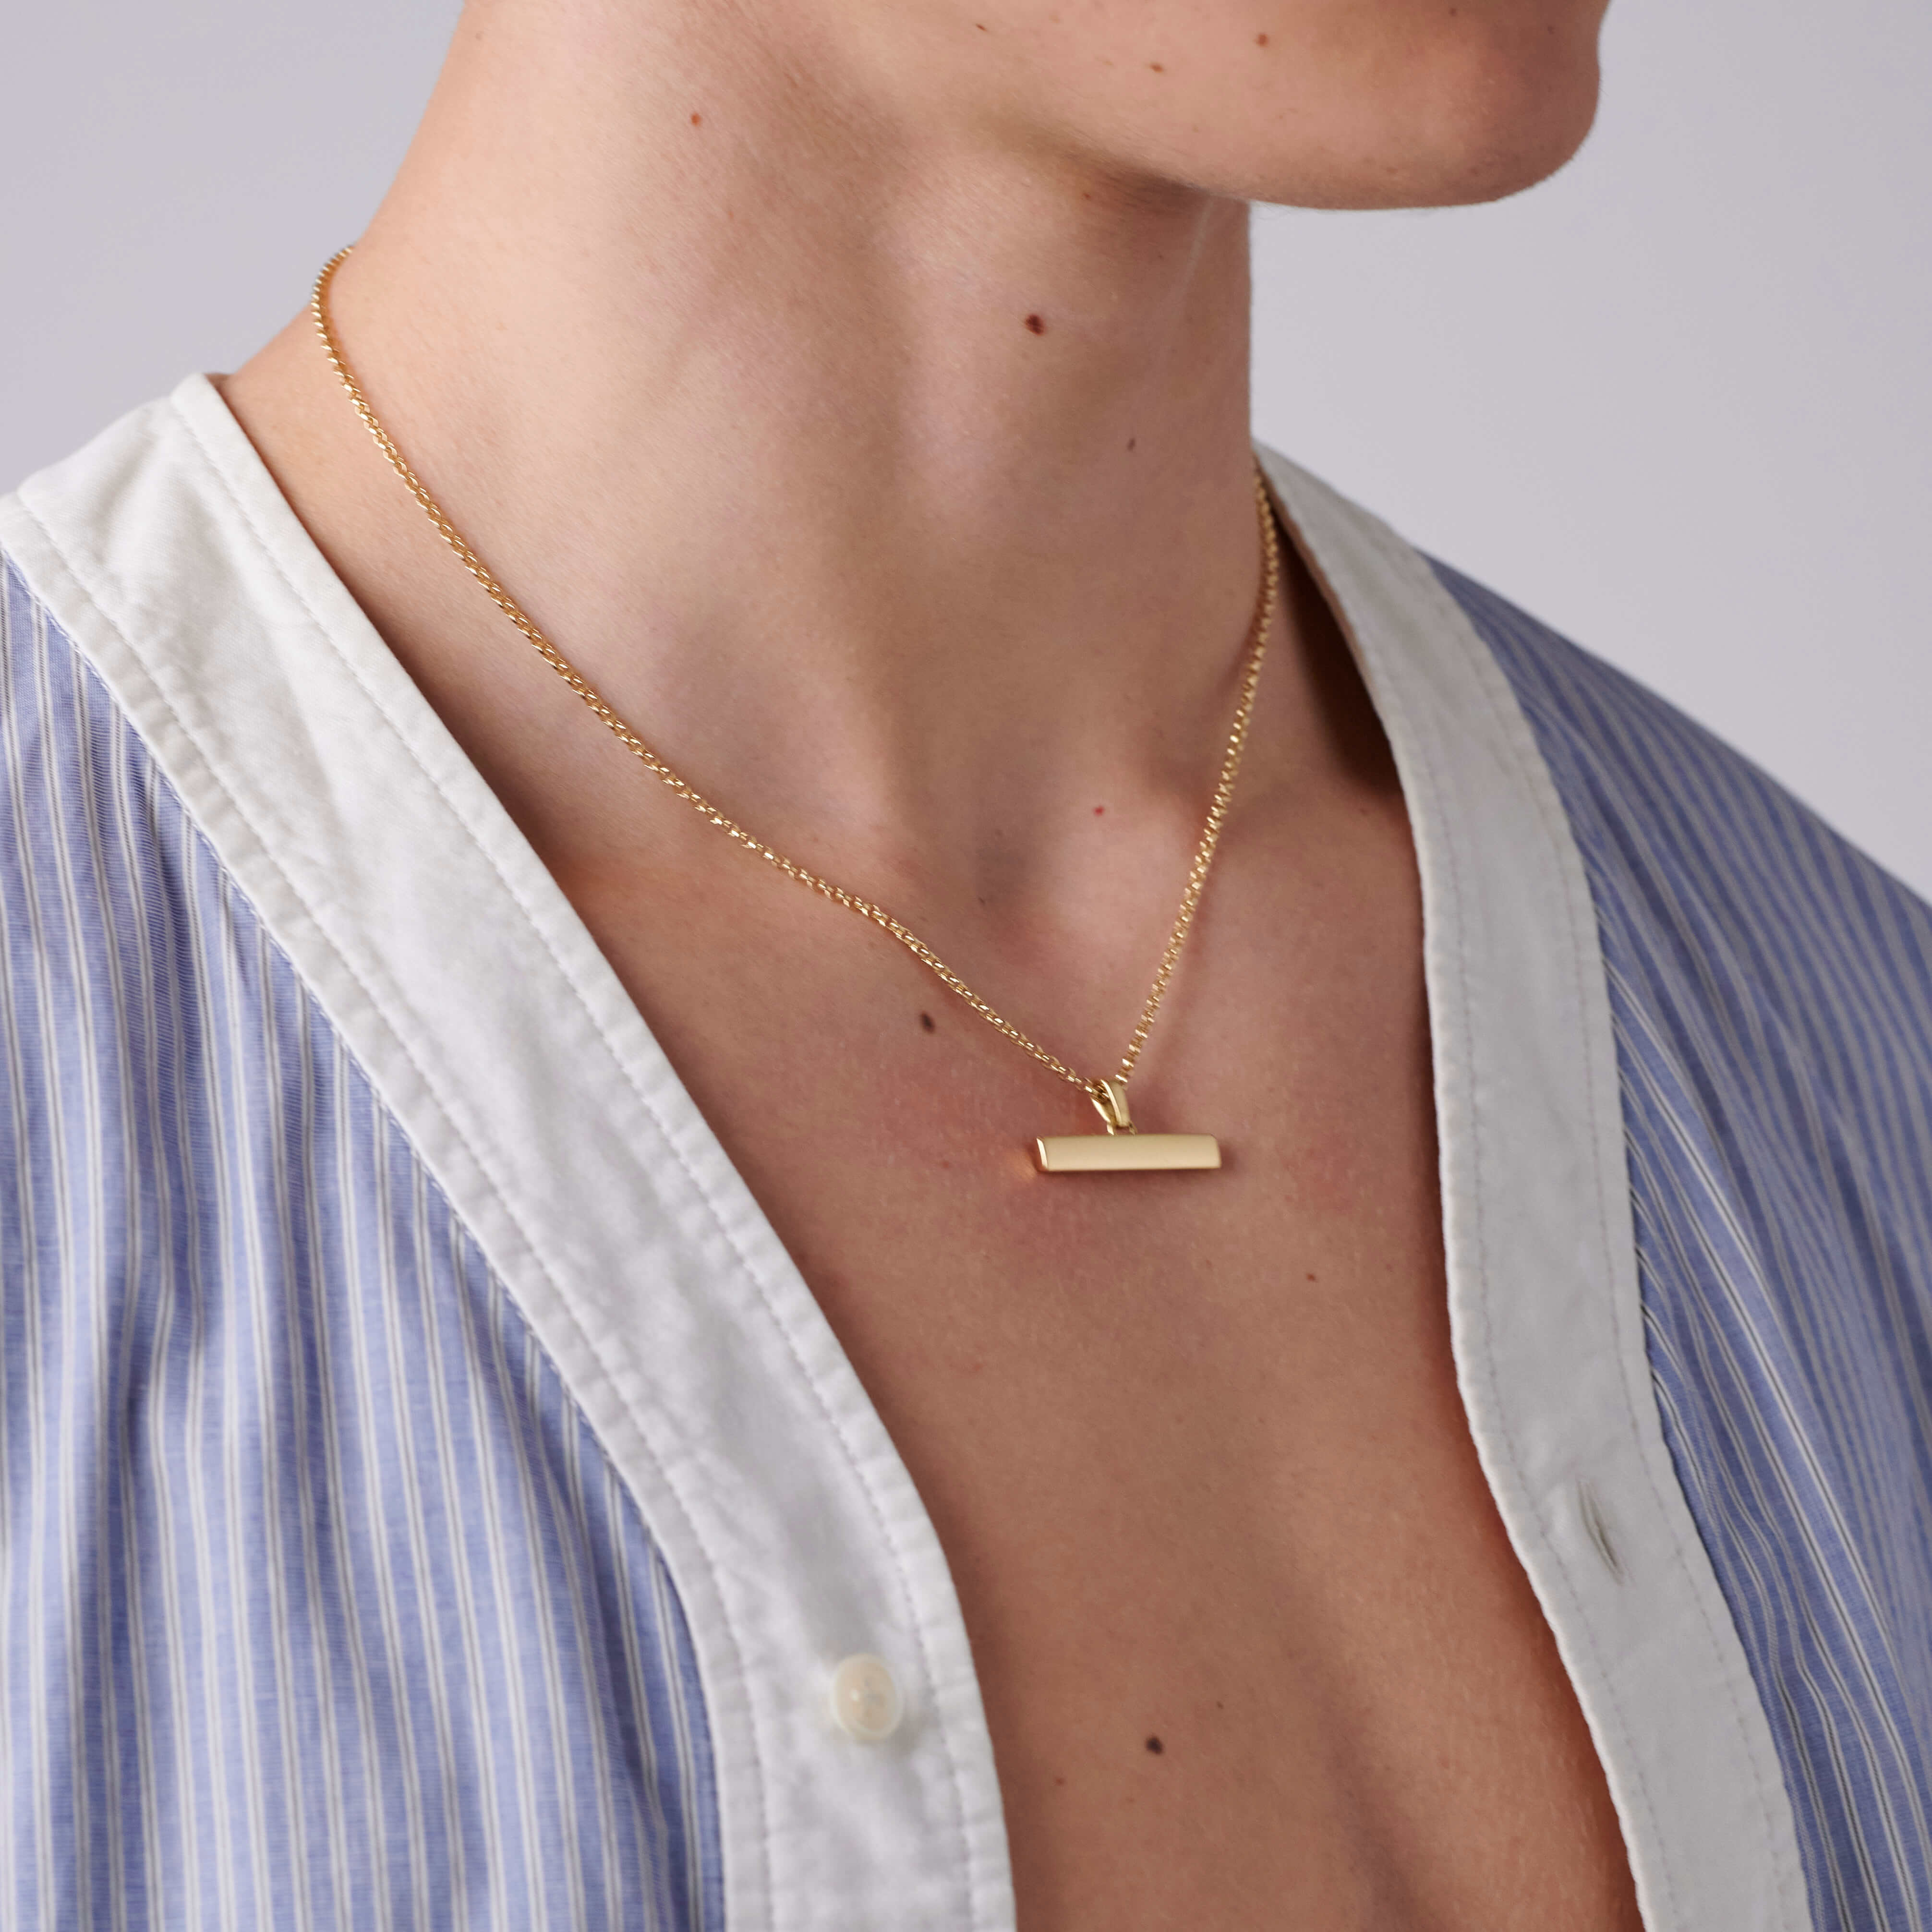 T Bar Necklace 18ct Gold Vermeil 2cm Albert Pendant Chain | eBay